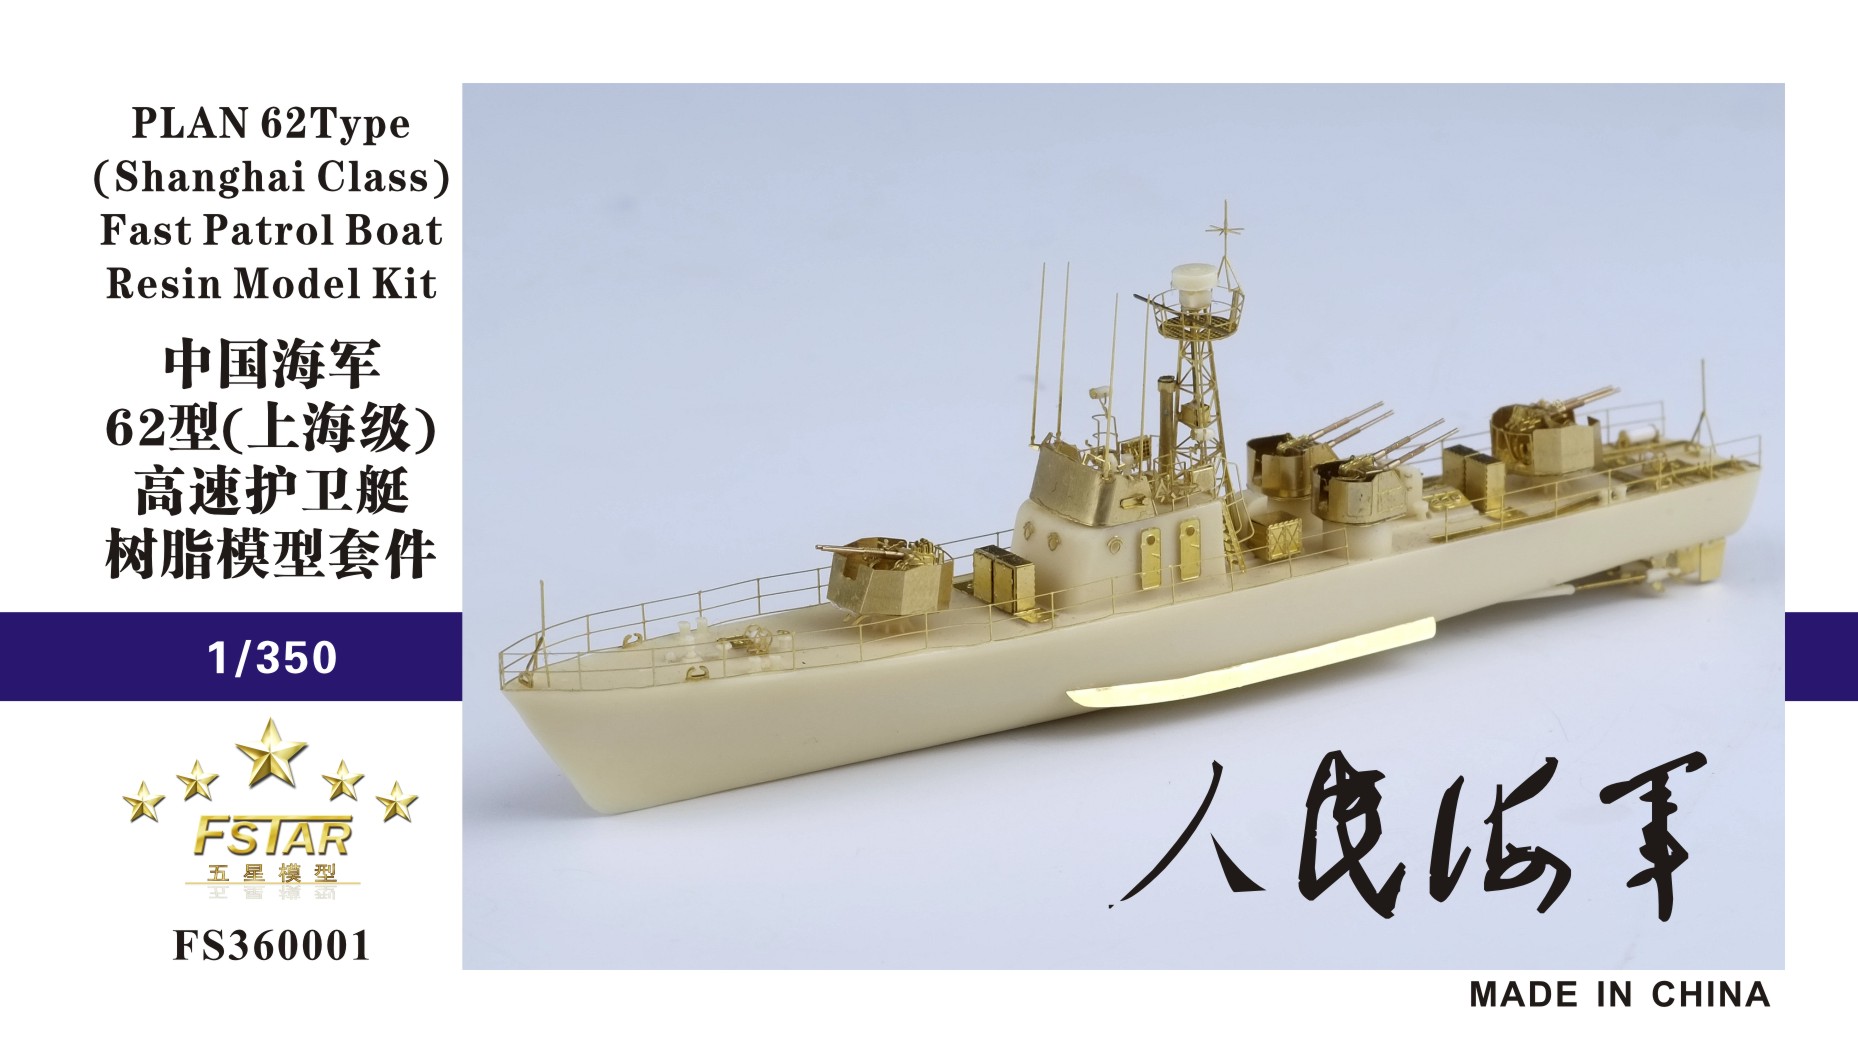 1/350 中国海军62型(上海级)高速护卫艇树脂模型套件 - 点击图像关闭